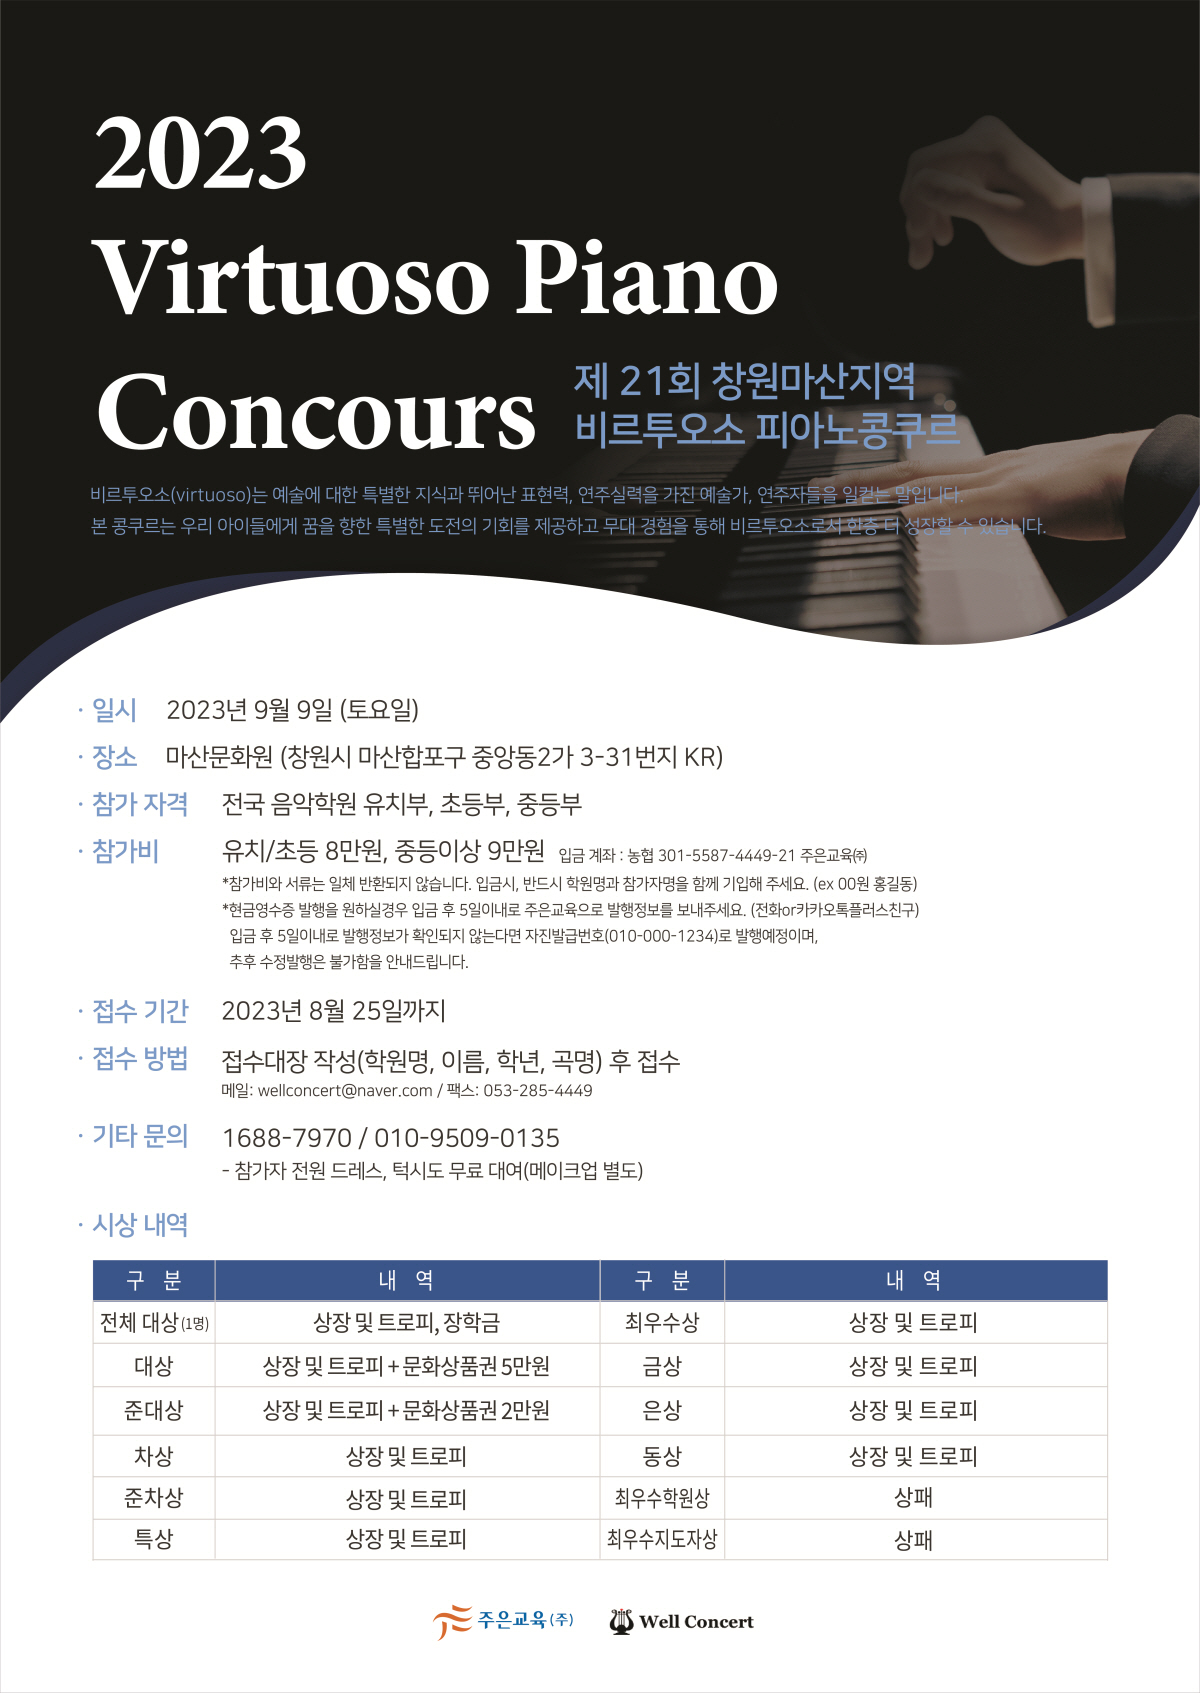 2023 제21회 비르투오소 피아노 콩쿠르 9월 9일 (창원 마산문화원)